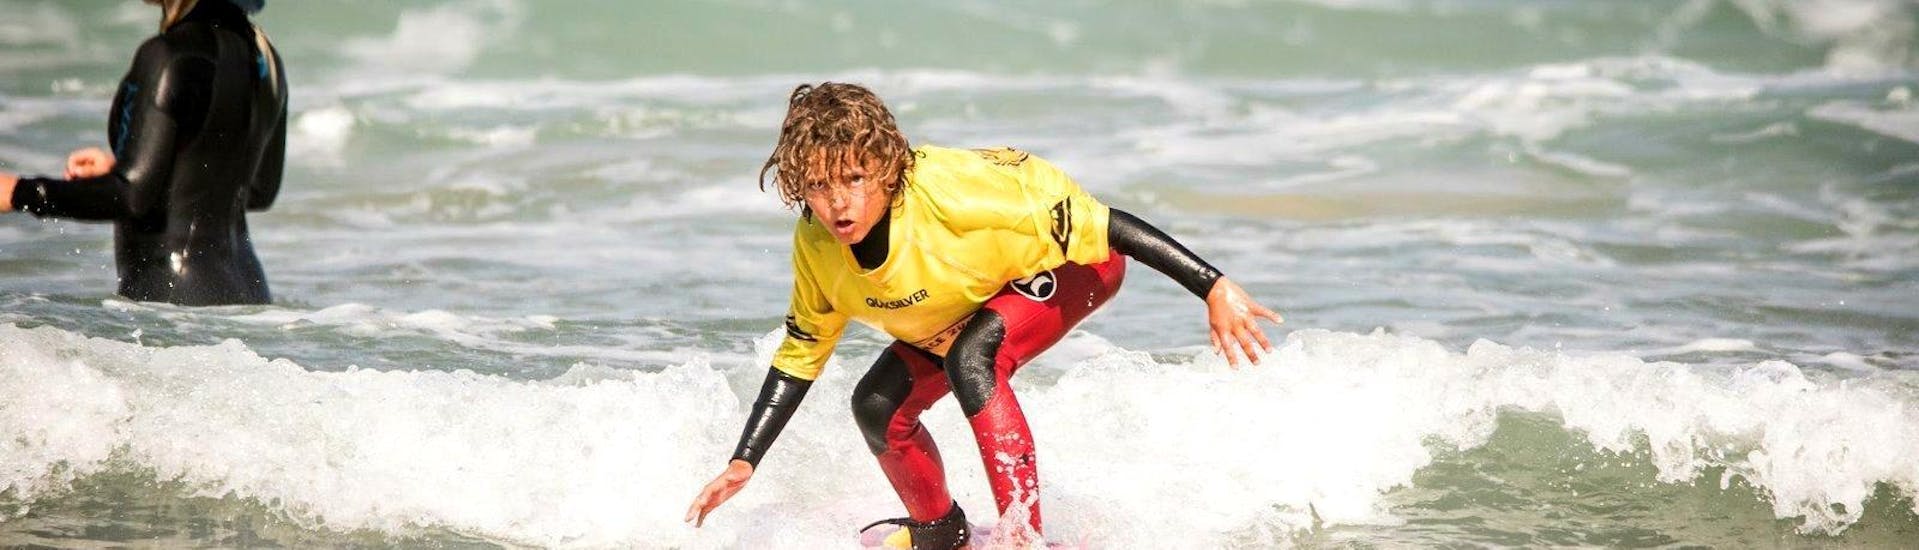 Un niño disfrutando de sus Clases Particulares de Surf (a partir de 5 años) en la Playa de Guincho en Cascais.